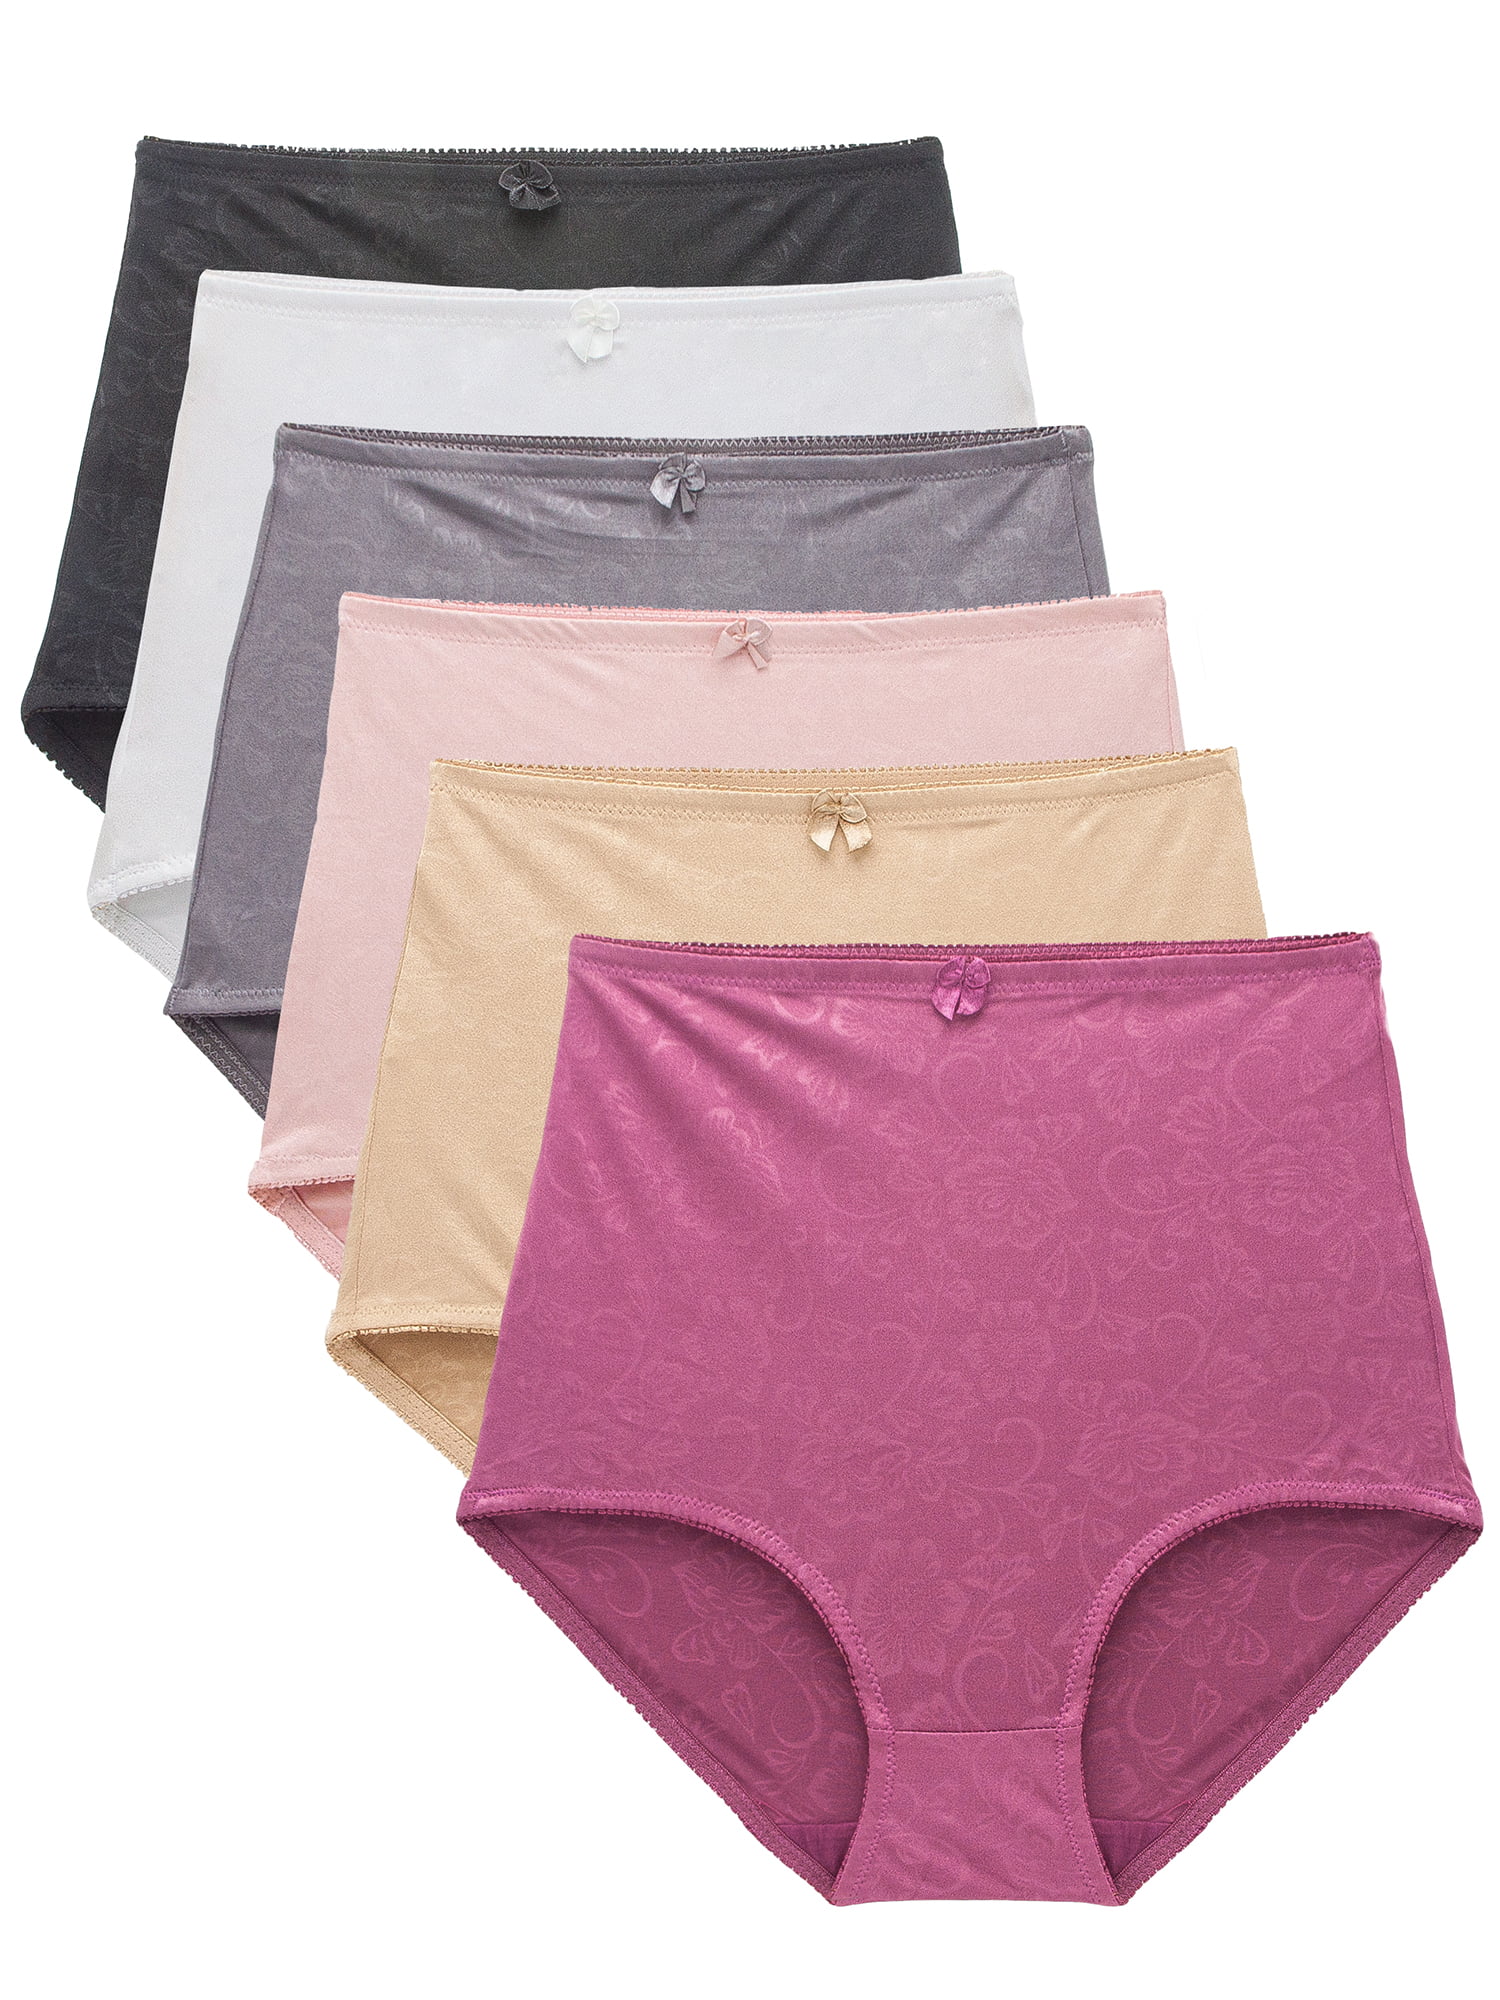 Barbra Lingerie - Barbra Women's Panties Floral Pattern Brief Small to ...